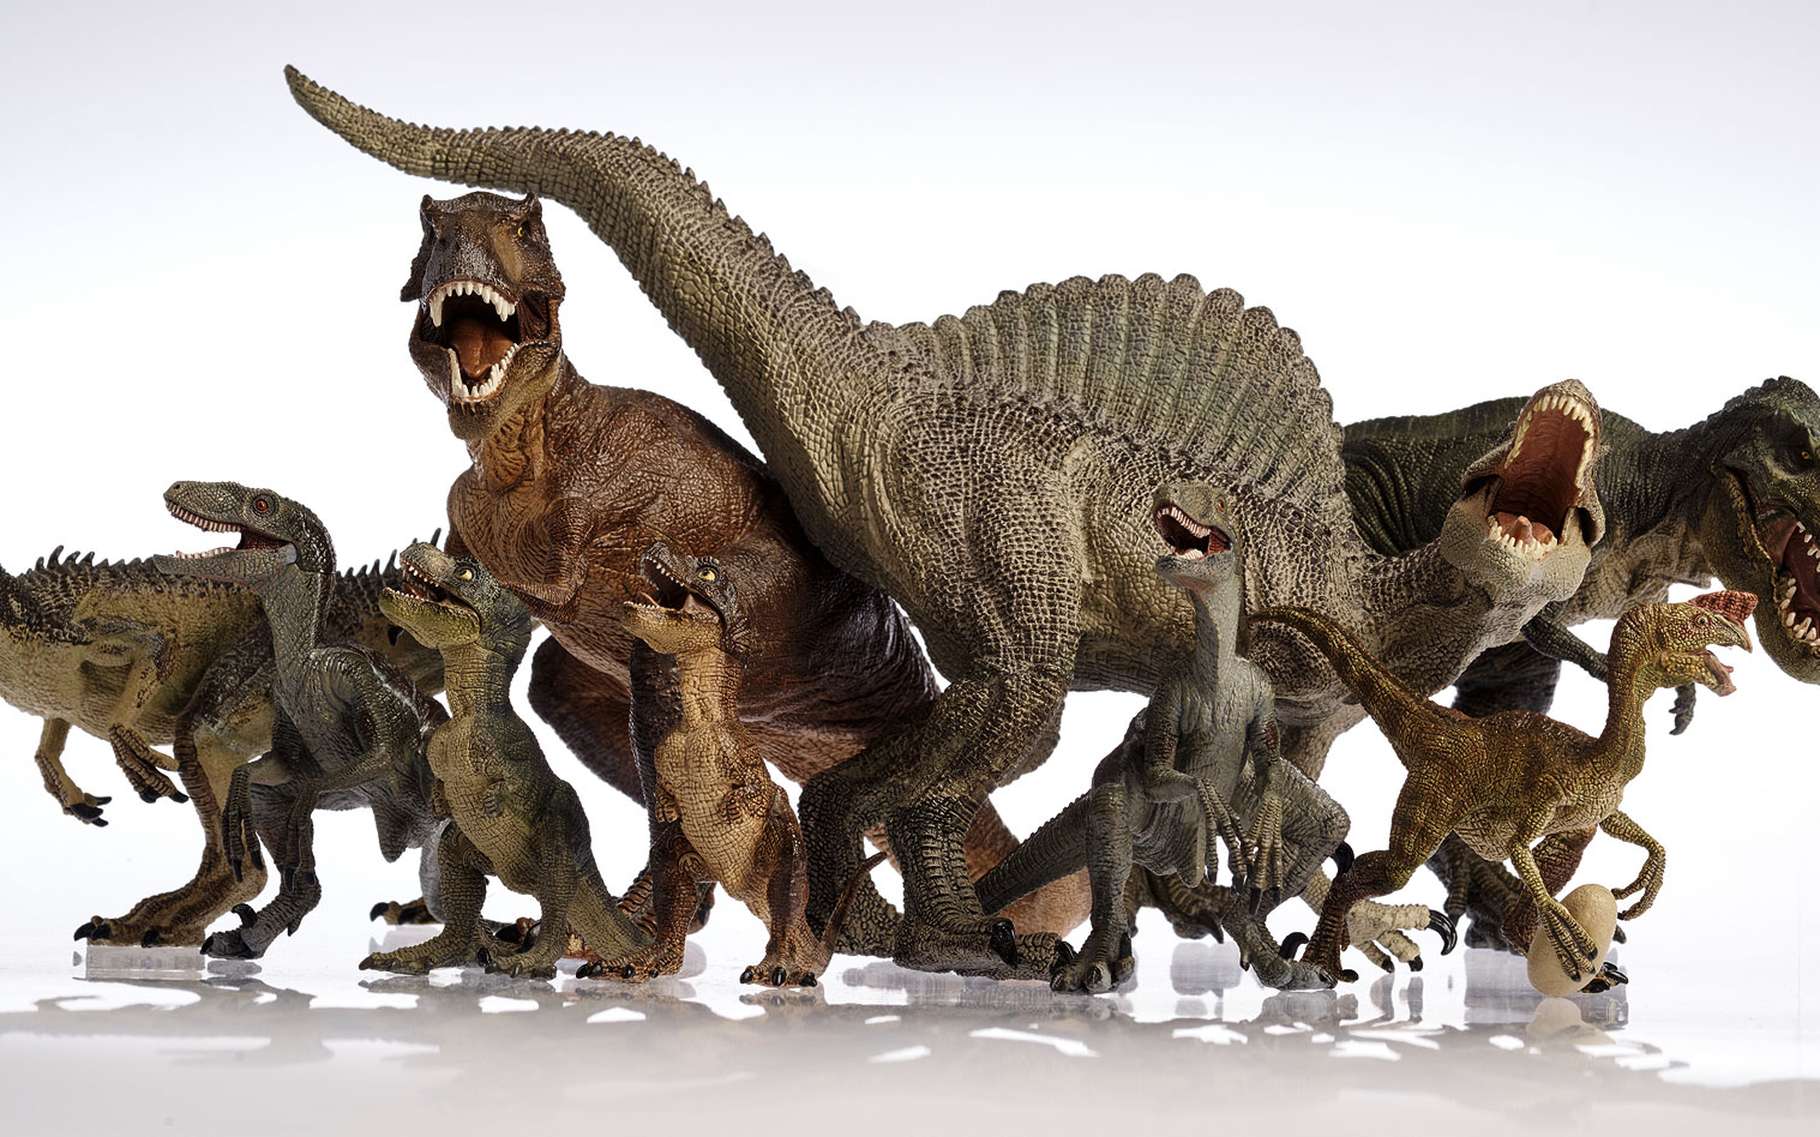 Les dinosaures étaient très diversifiés. © Metha1819, Shutterstock 